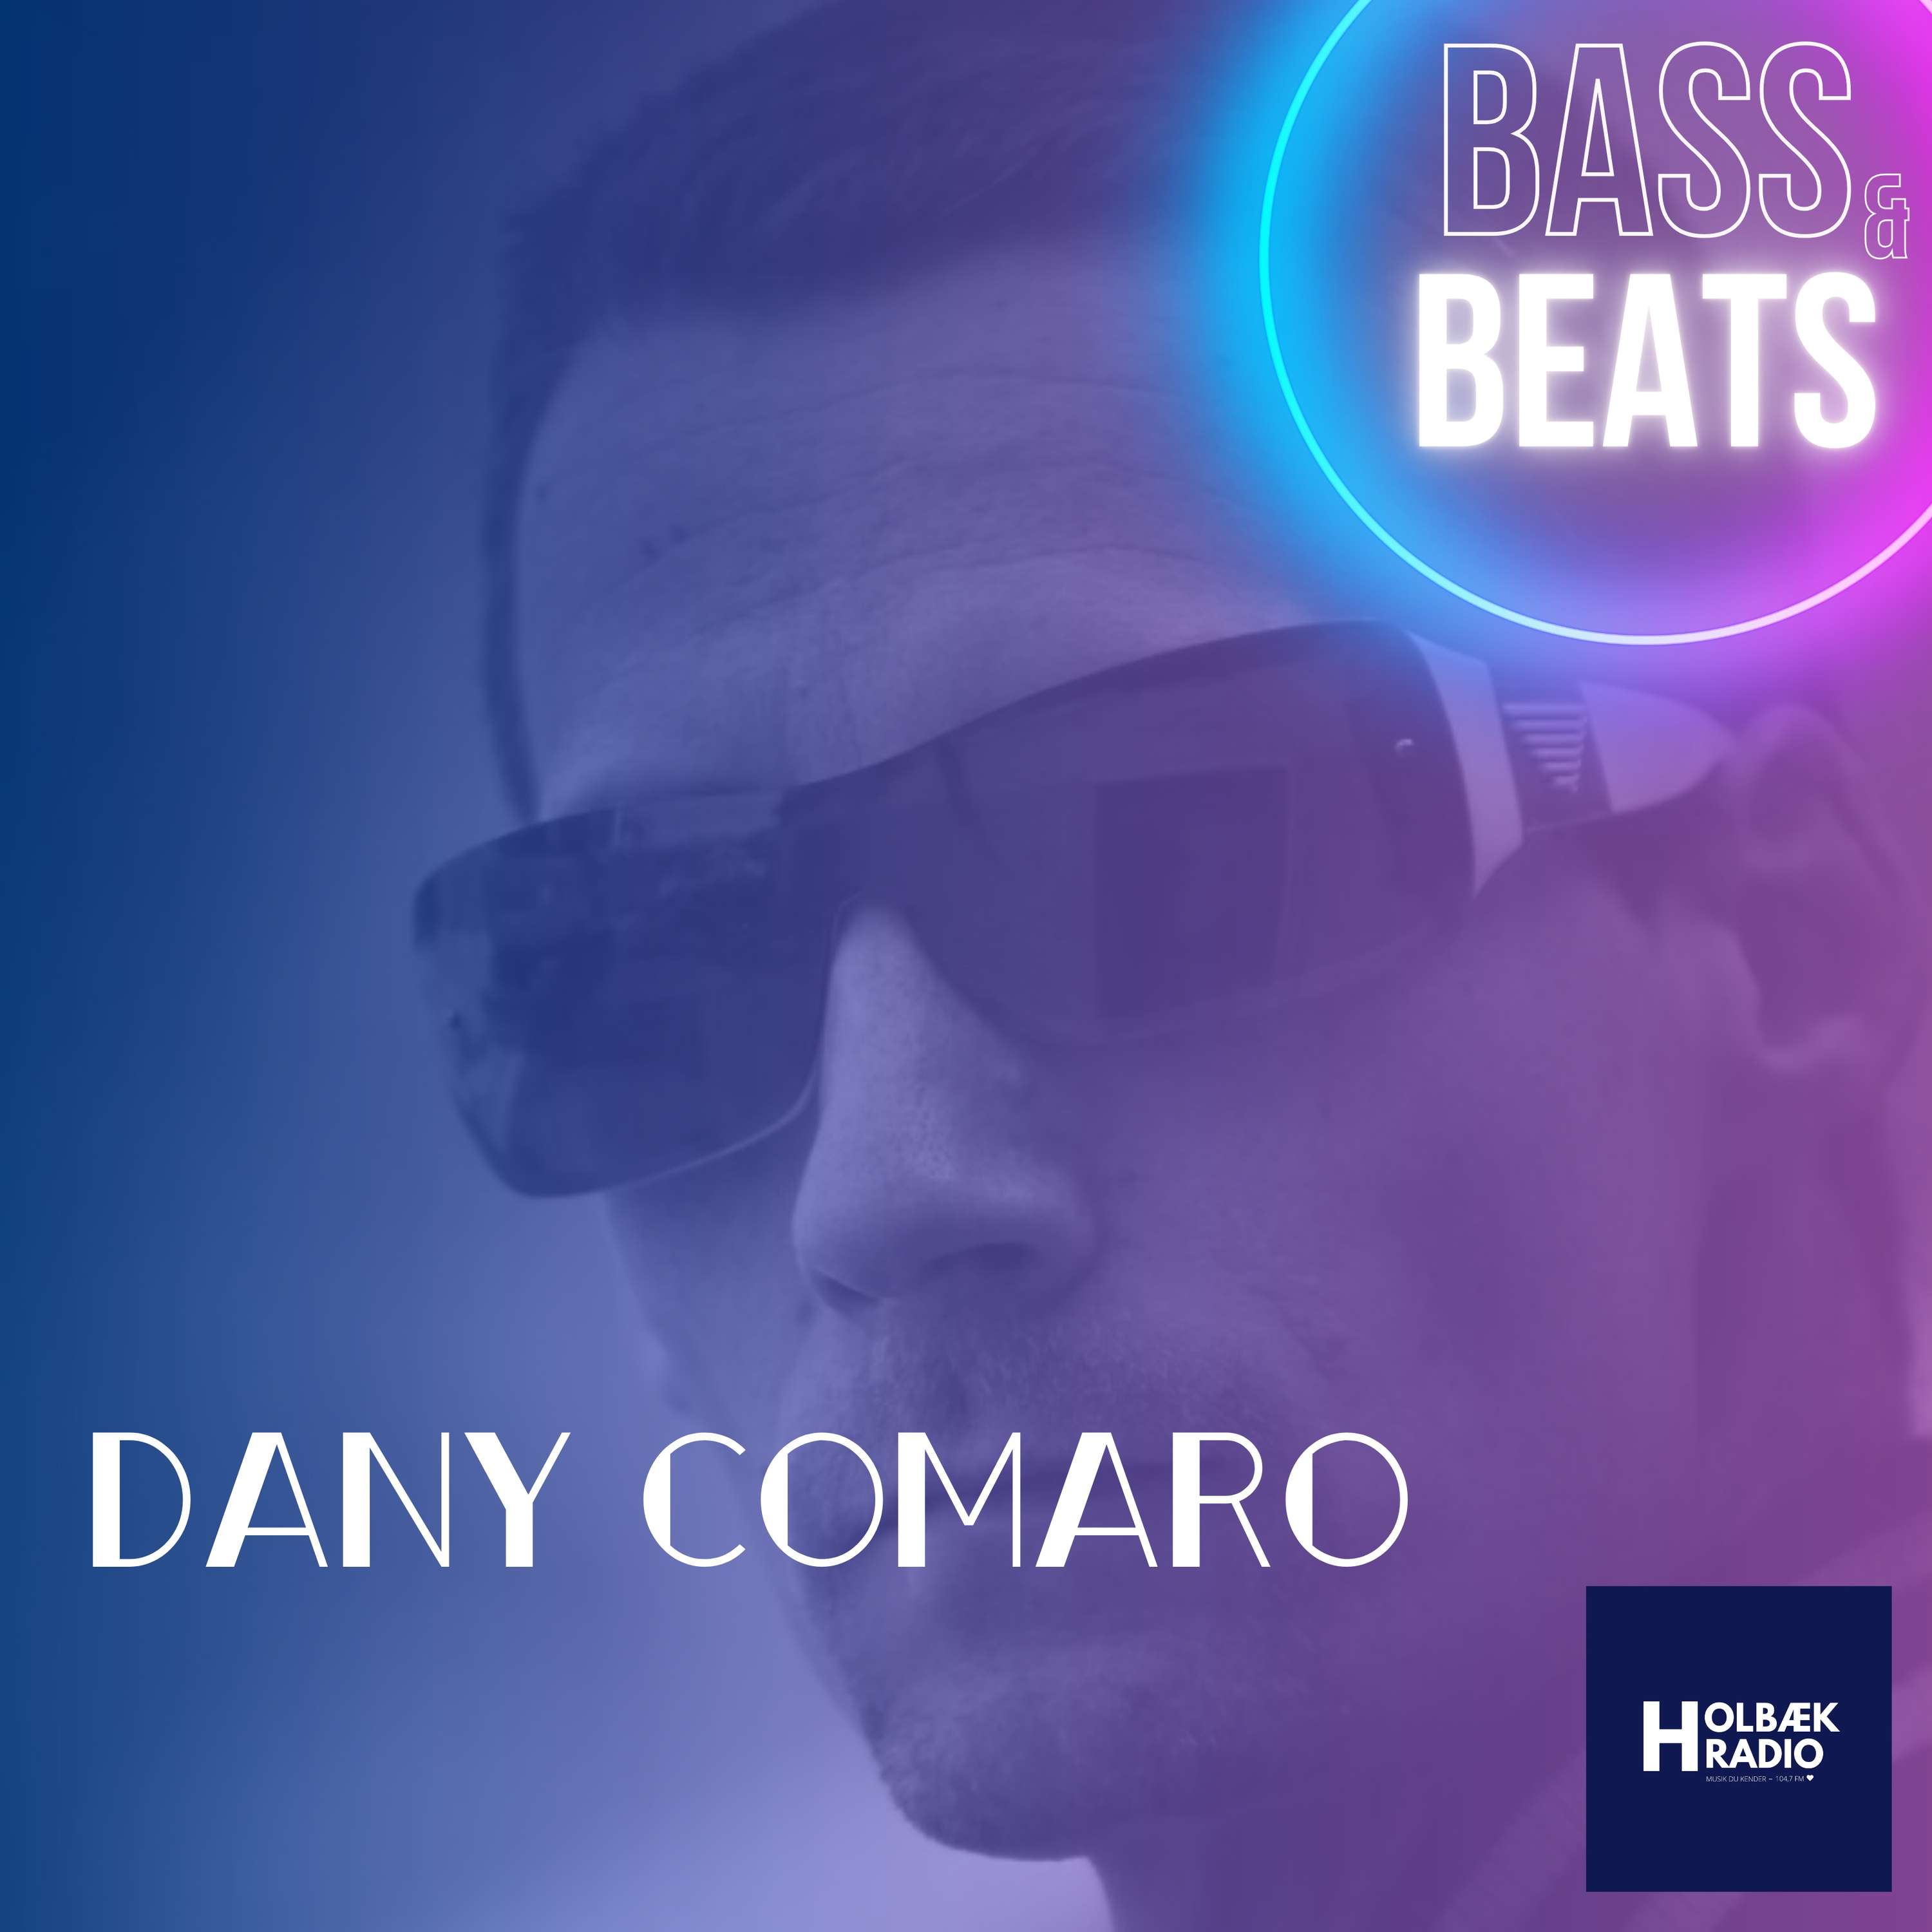 BASS & BEATS - Dany Comaro